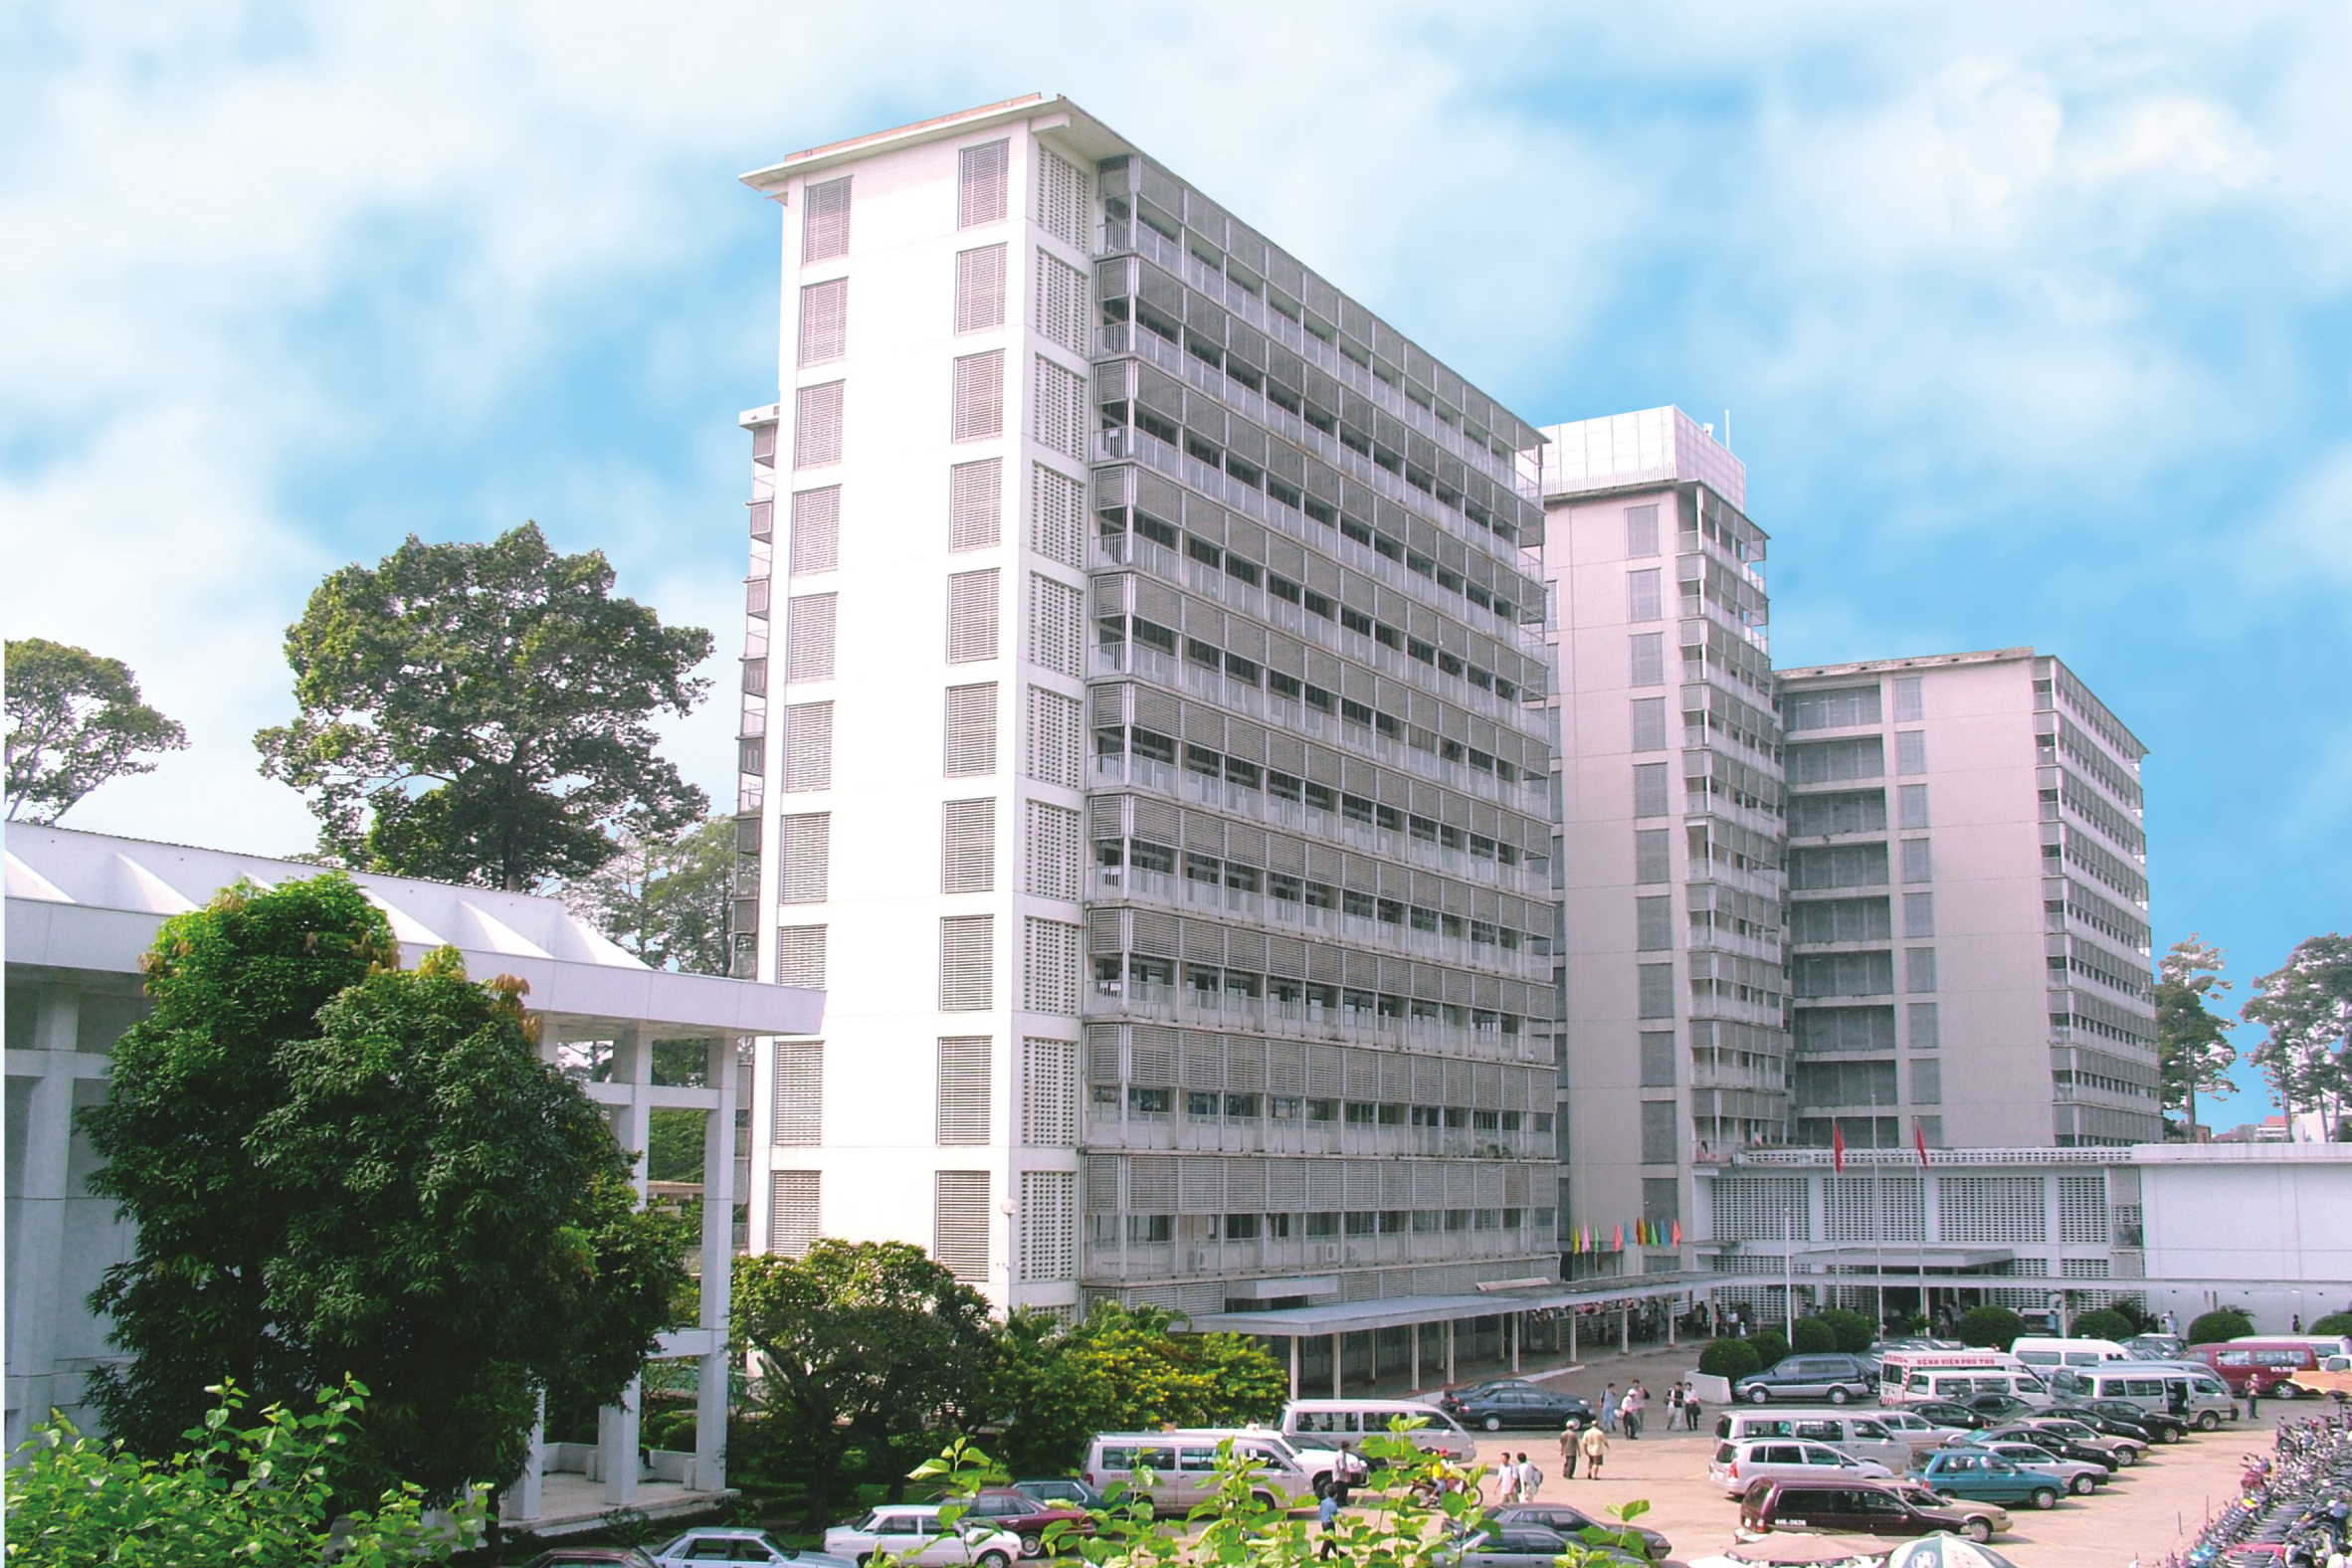 Cho Ray Hospital – HCMC.